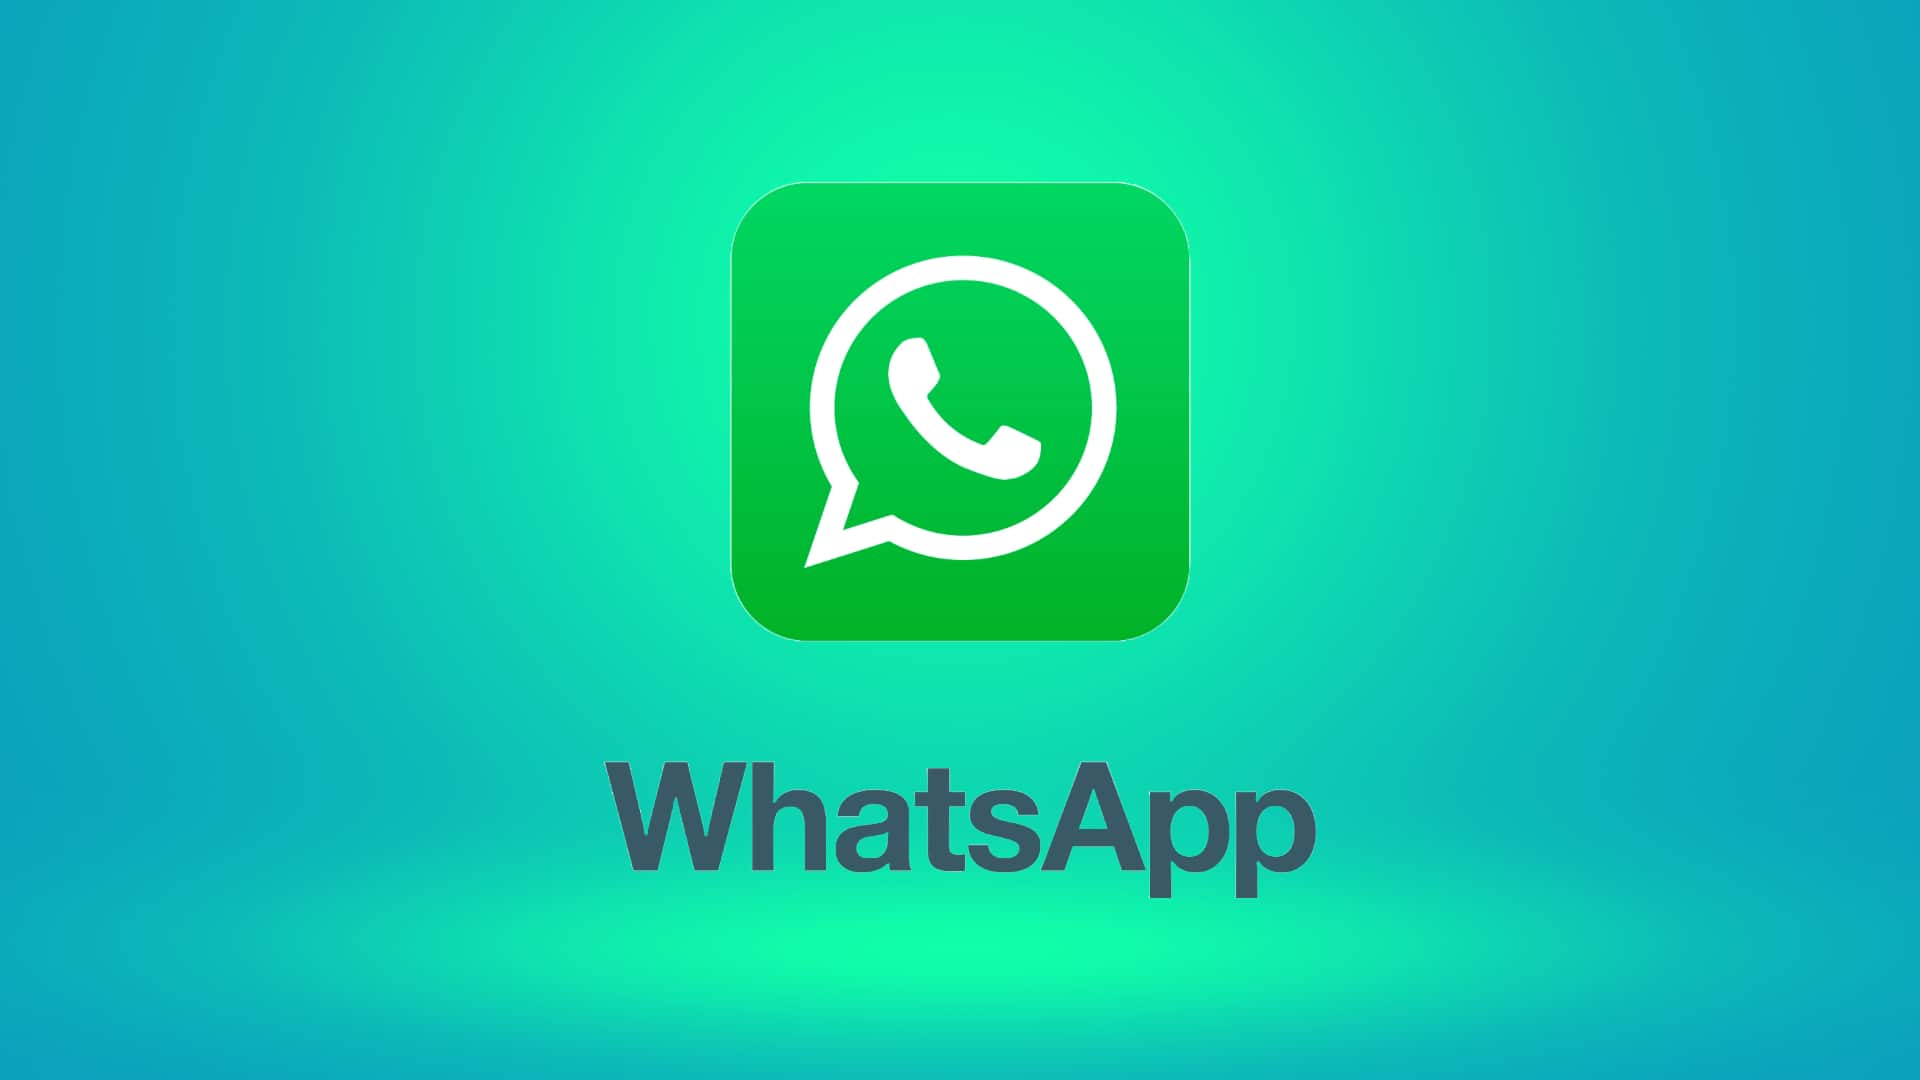 व्हाट्सऐप का इंटरफेस बना सकेंगे और आकर्षक, iOS यूजर्स को मिलेंगे कई विकल्प